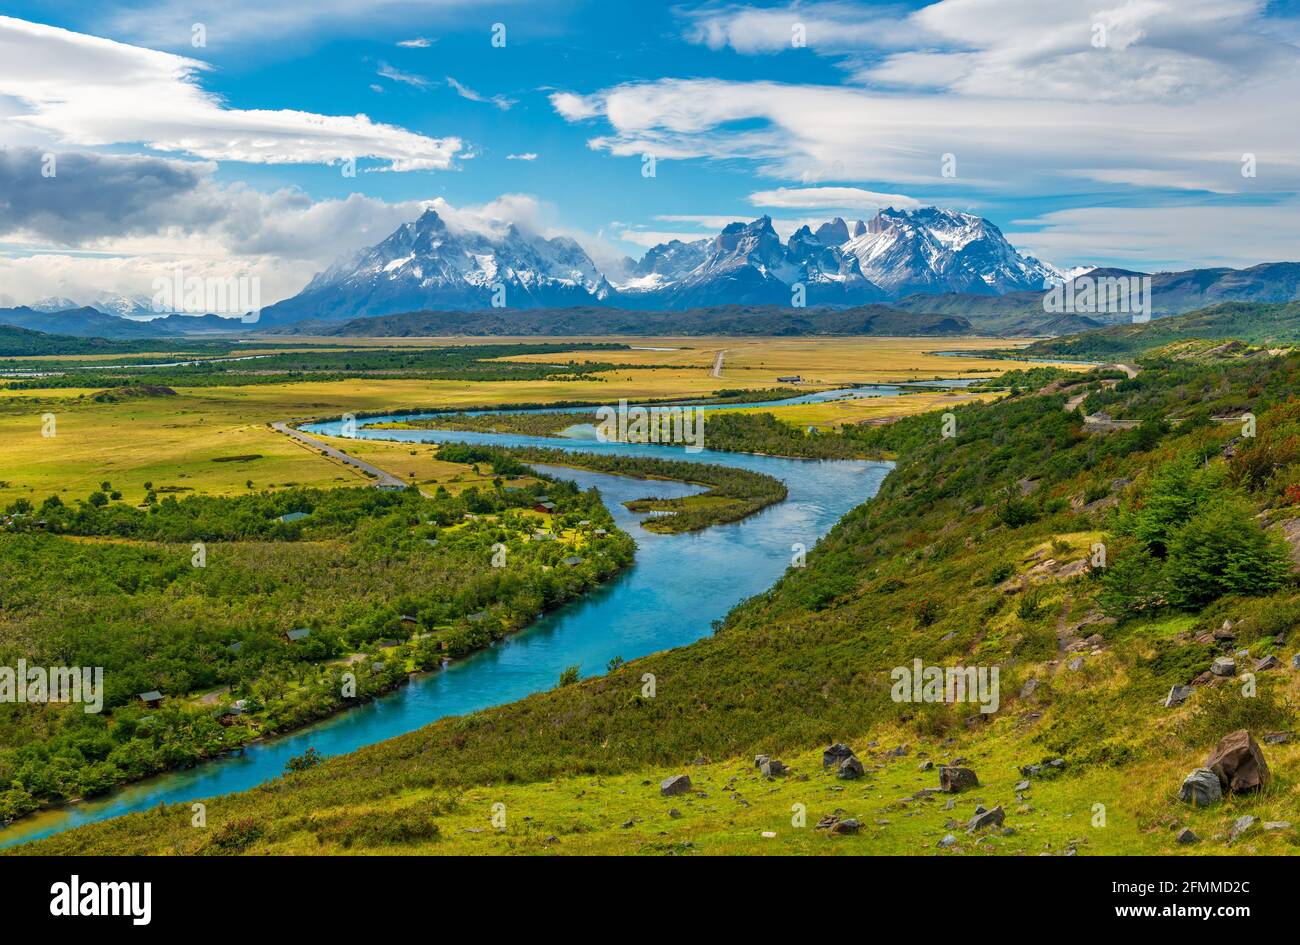 Paysage des pics de Cuernos et Torres del Paine avec rivière Serrano au printemps, parc national de Torres del Paine, Patagonie, Chili. Banque D'Images